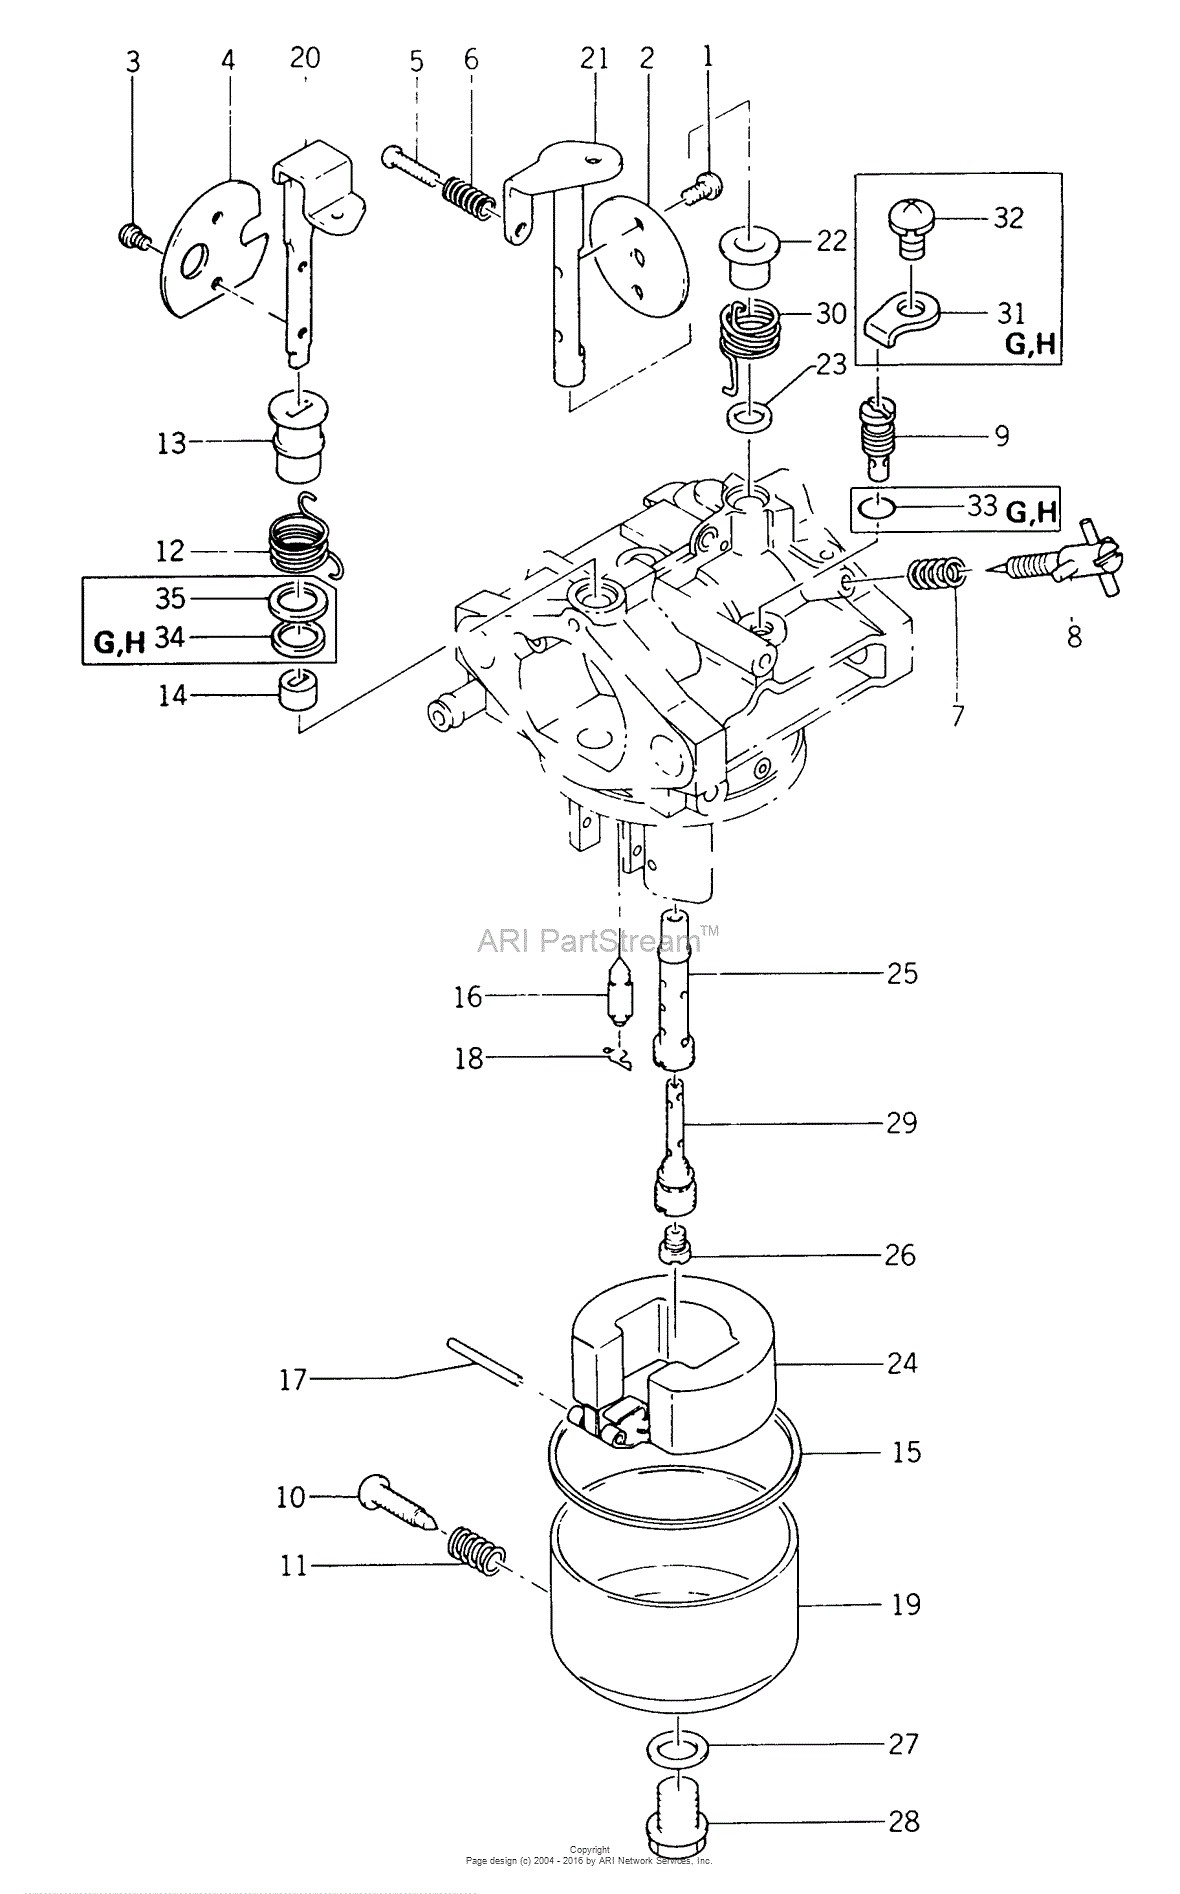 4stroke Engine Diagram Kawasaki Fb460v Gs01 4 Stroke Engine Fb460v Parts Diagram for Carburetor Of 4stroke Engine Diagram